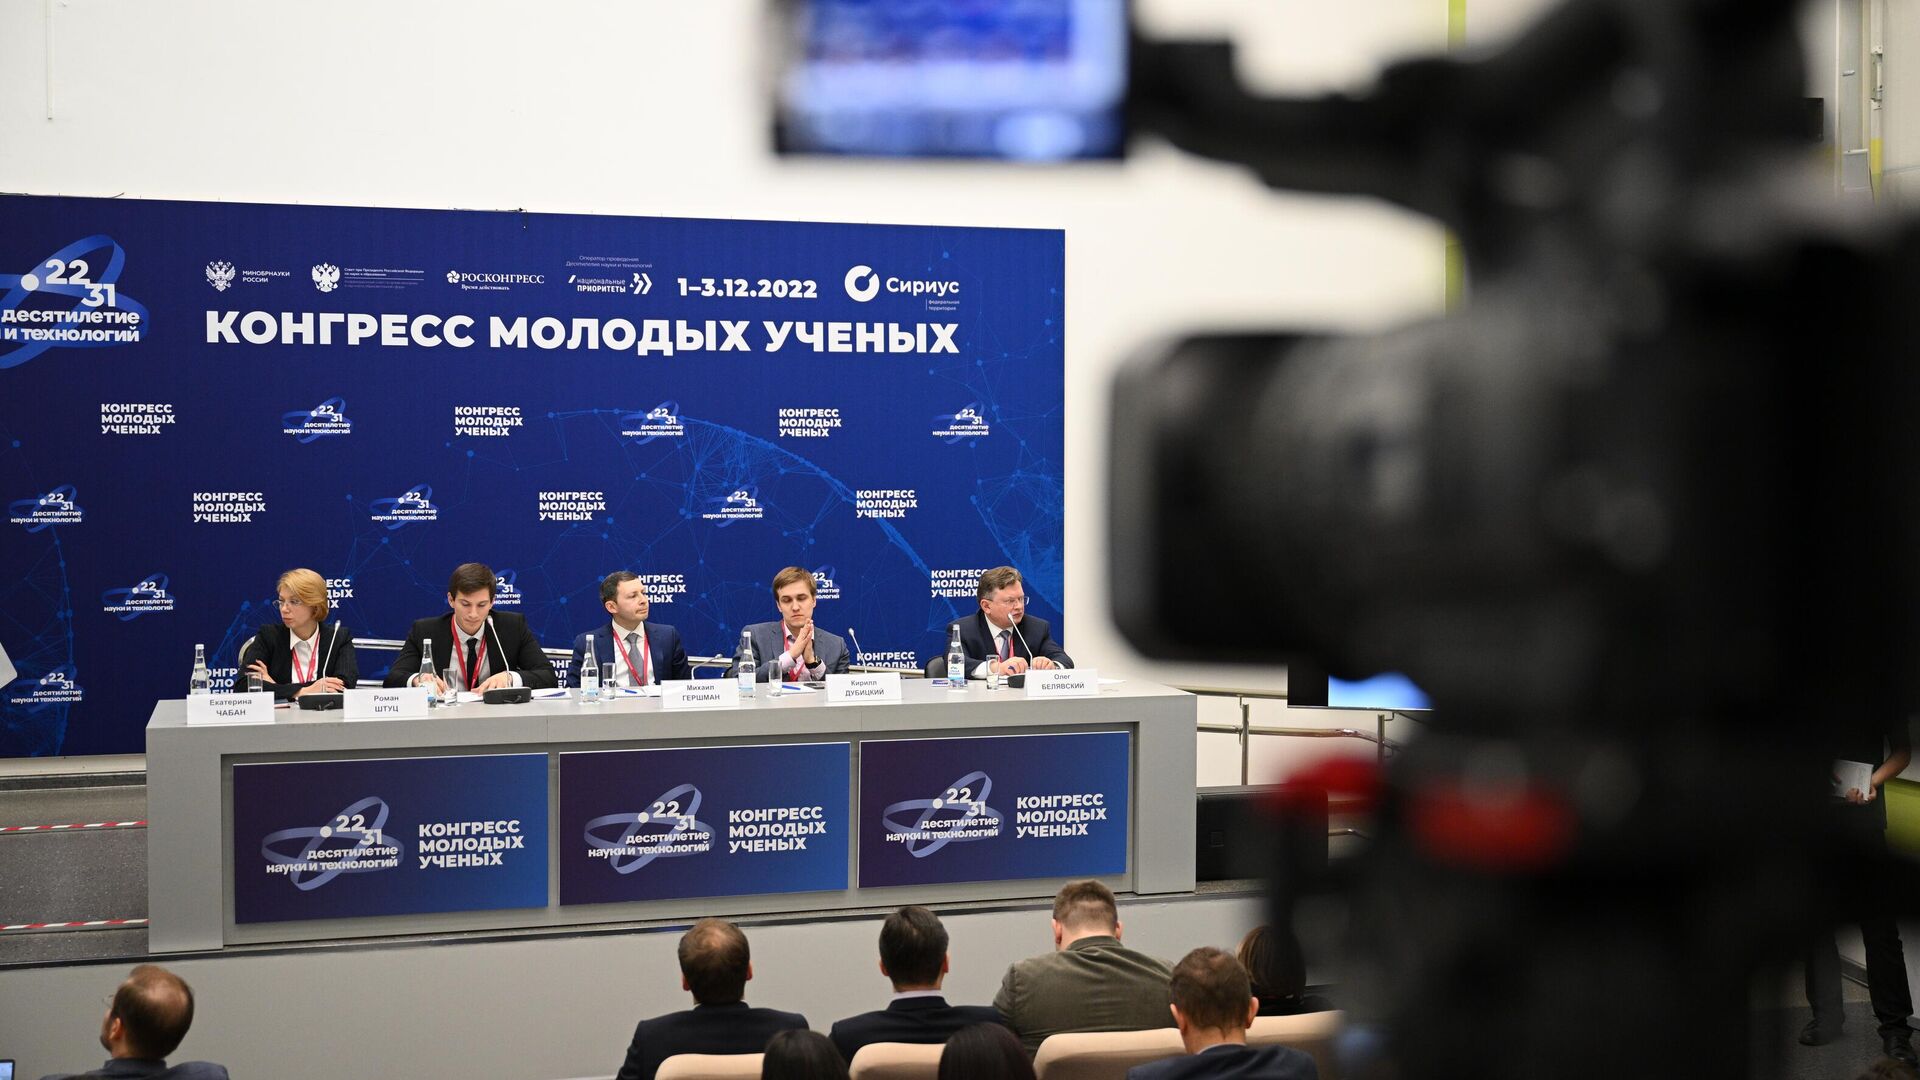 На конгрессе молодых учёных с участием белгородцев открылась медиастудия.